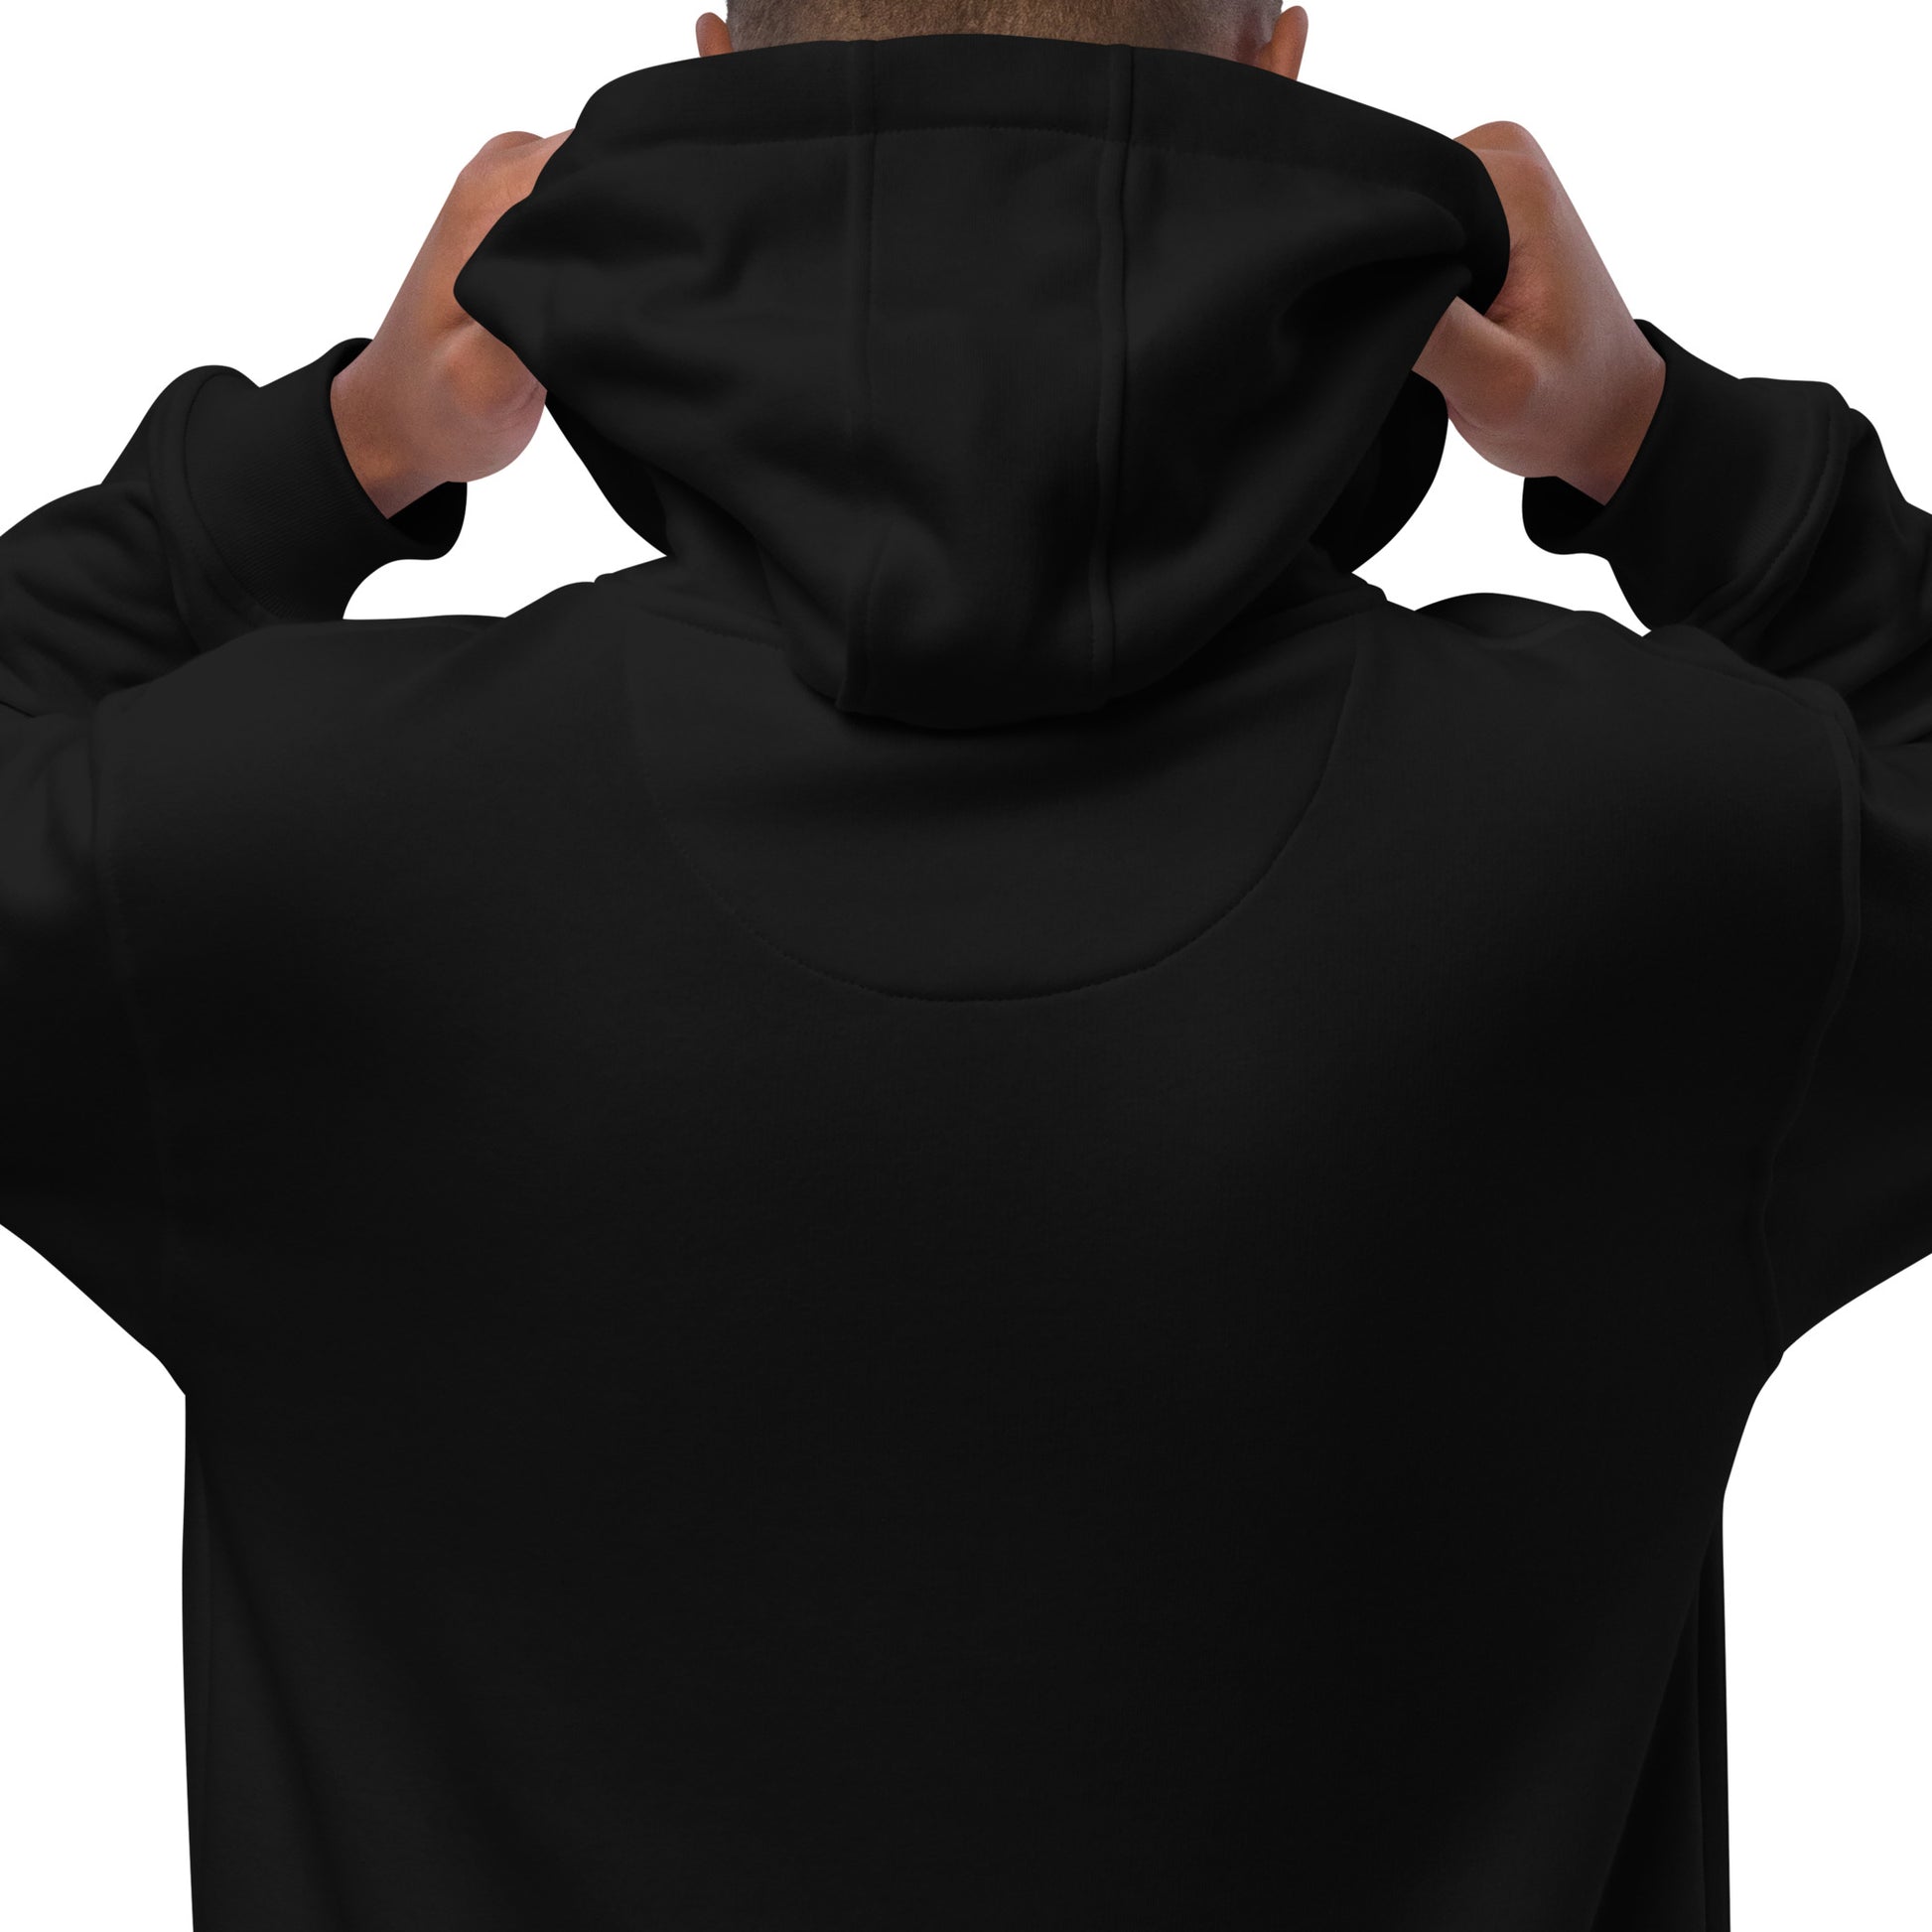 back view of black hoodie